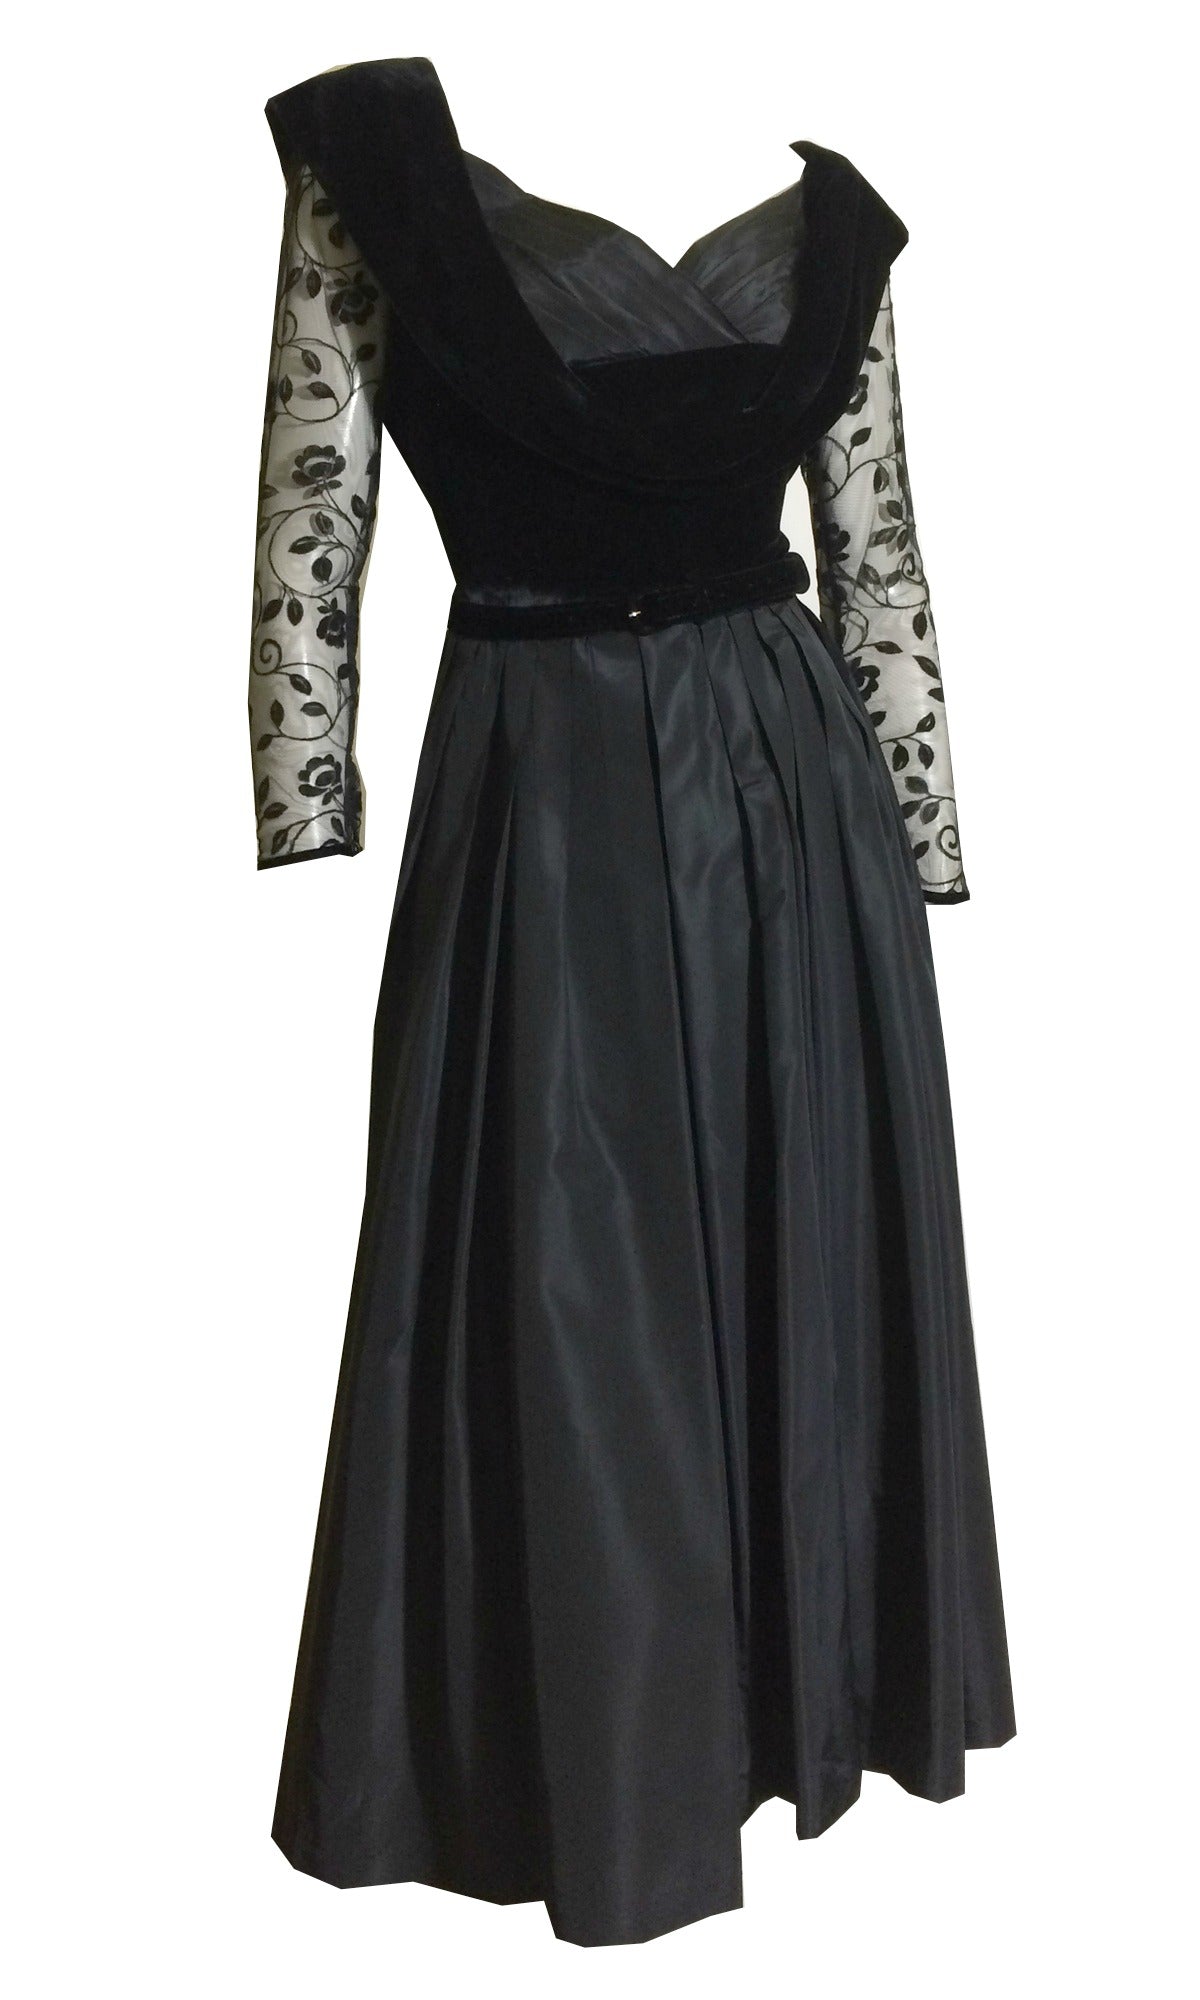 Nipped Waist Black Taffeta and Velvet Full Skirt Cocktail Dress circa 1950s